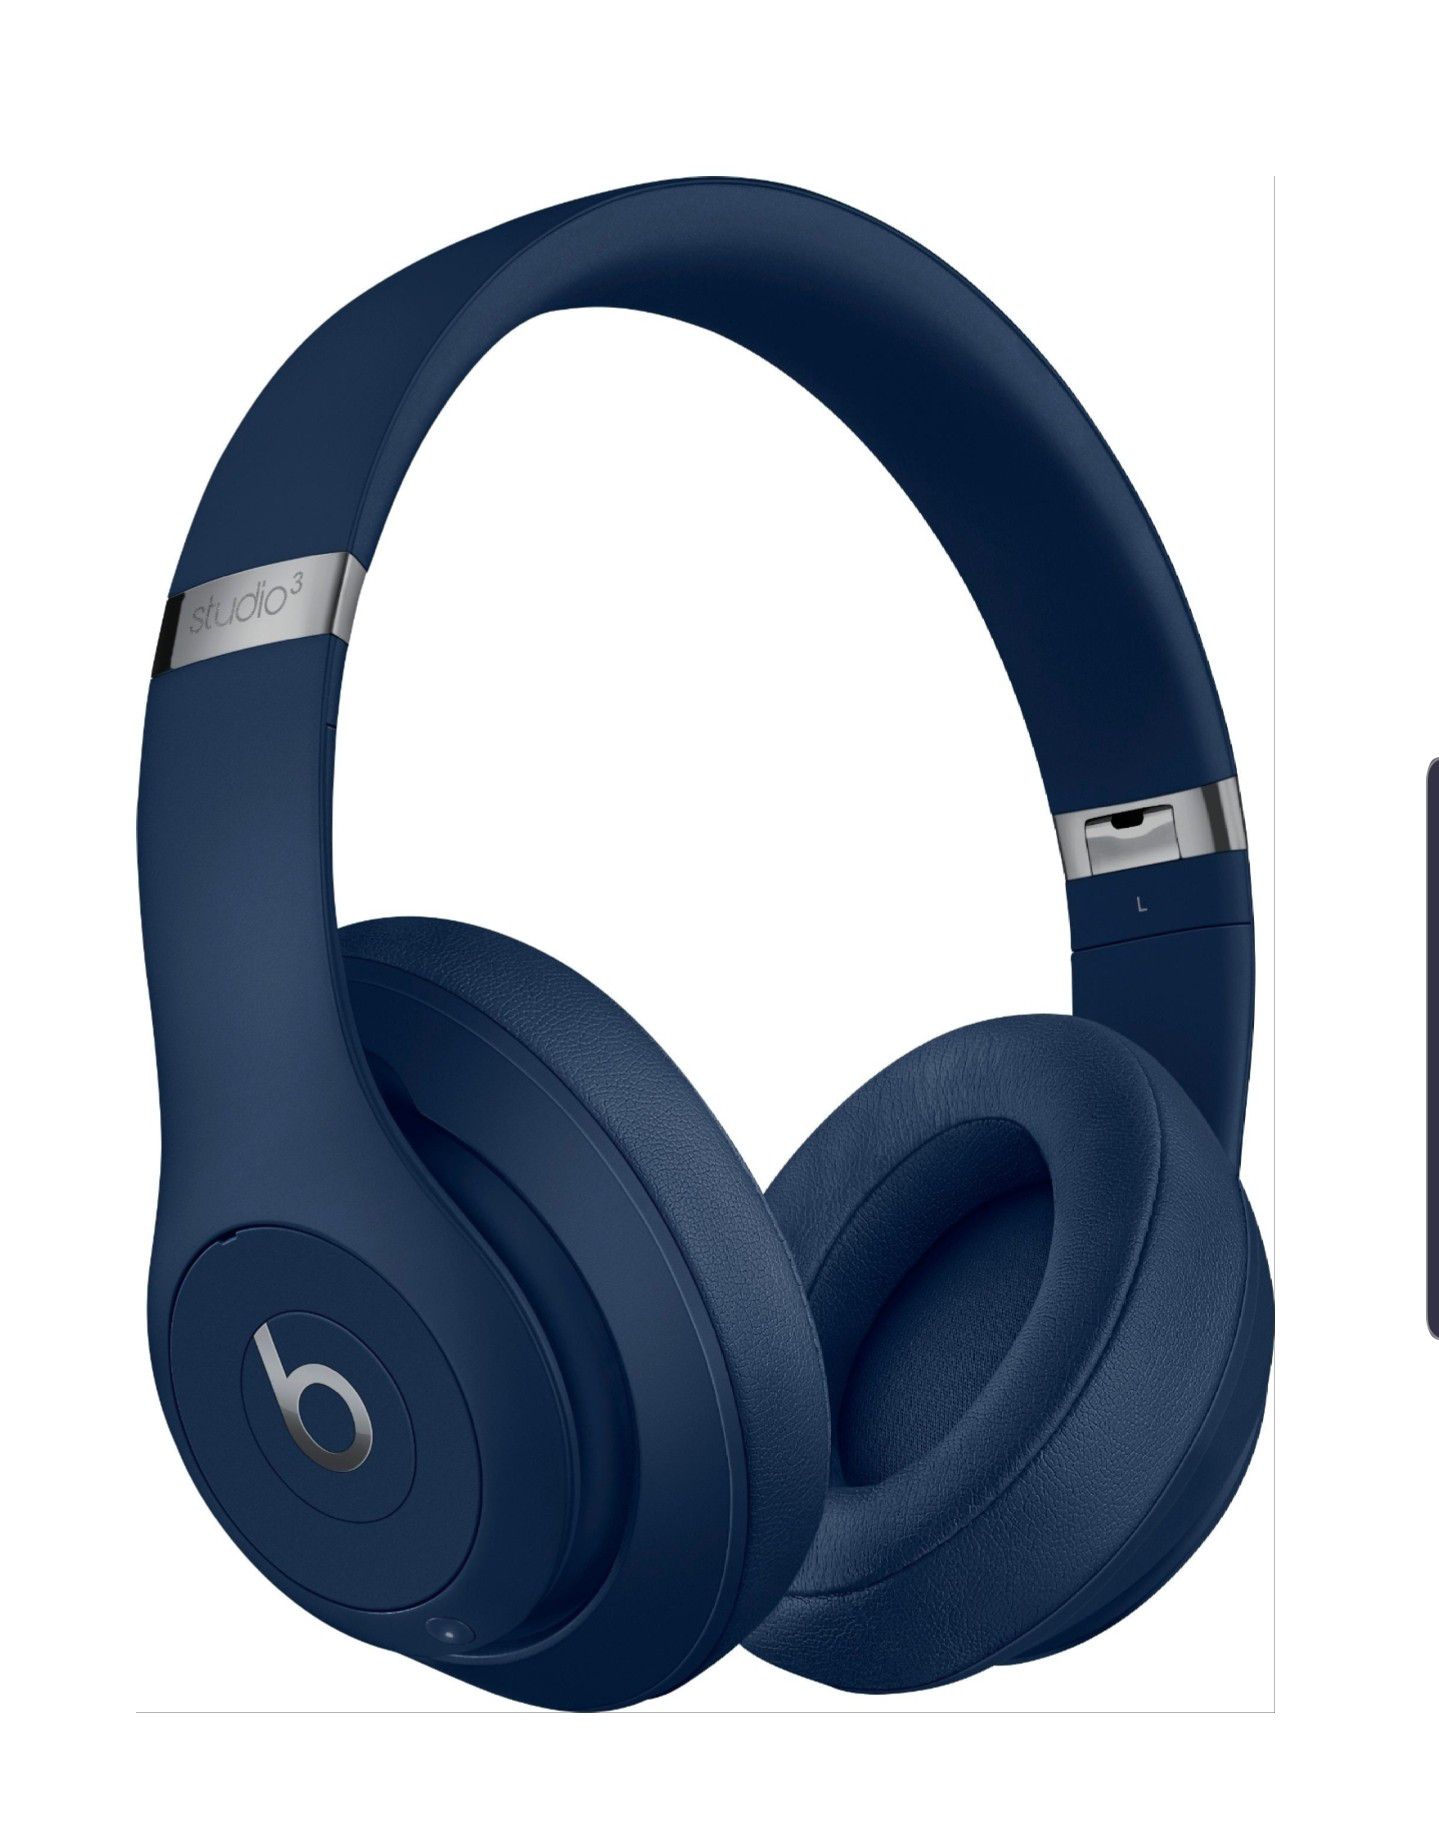 Blue Beats Studio 3 Wireless headphones